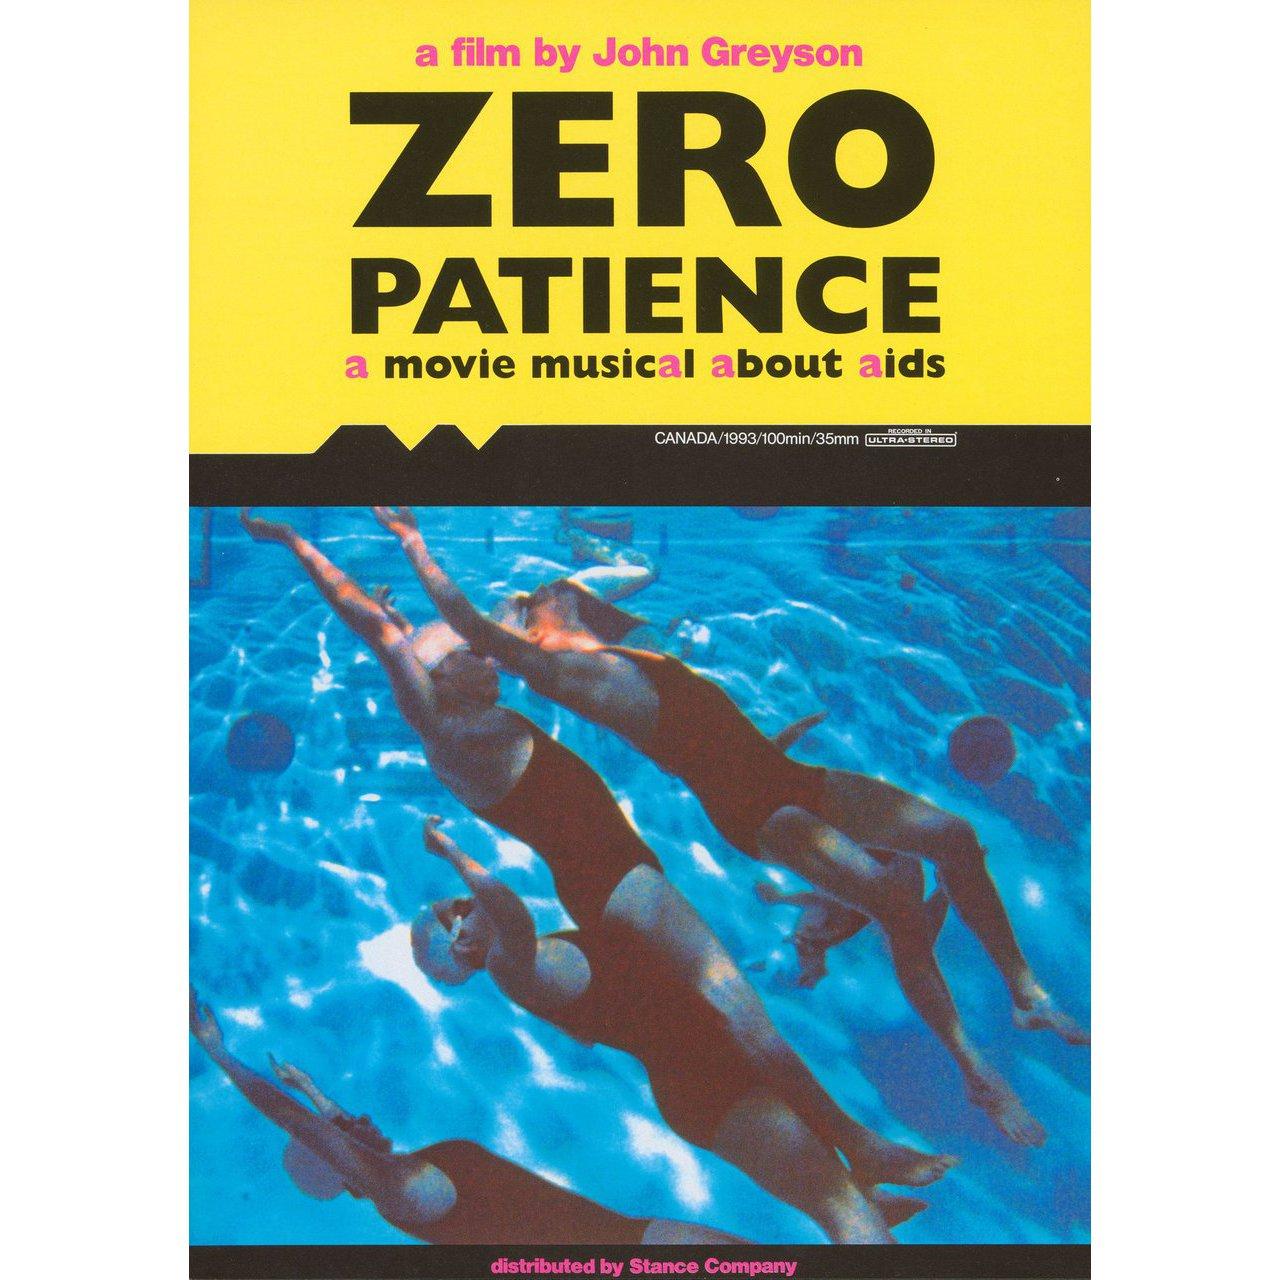 Affiche originale japonaise B2 de 1993 pour le film Zero Patience réalisé par John Greyson avec John Robinson / Normand Fauteux / Dianne Heatherington / Richardo Keens-Douglas. Très bon état, roulé. Veuillez noter que la taille est indiquée en